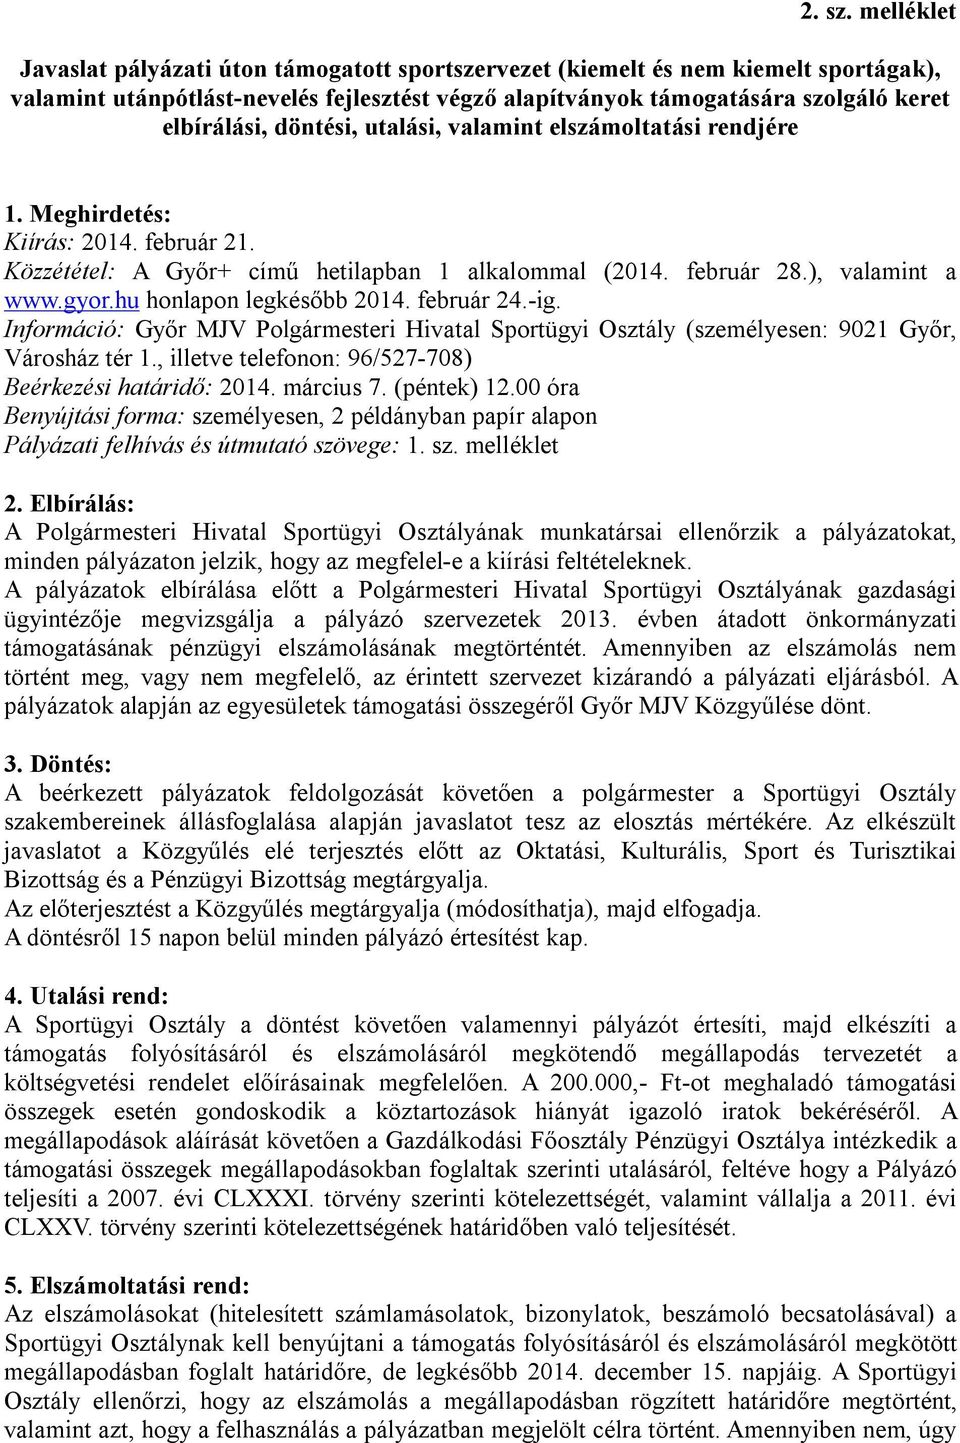 döntési, utalási, valamint elszámoltatási rendjére 1. Meghirdetés: Kiírás: 2014. február 21. Közzététel: A Győr+ című hetilapban 1 alkalommal (2014. február 28.), valamint a www.gyor.